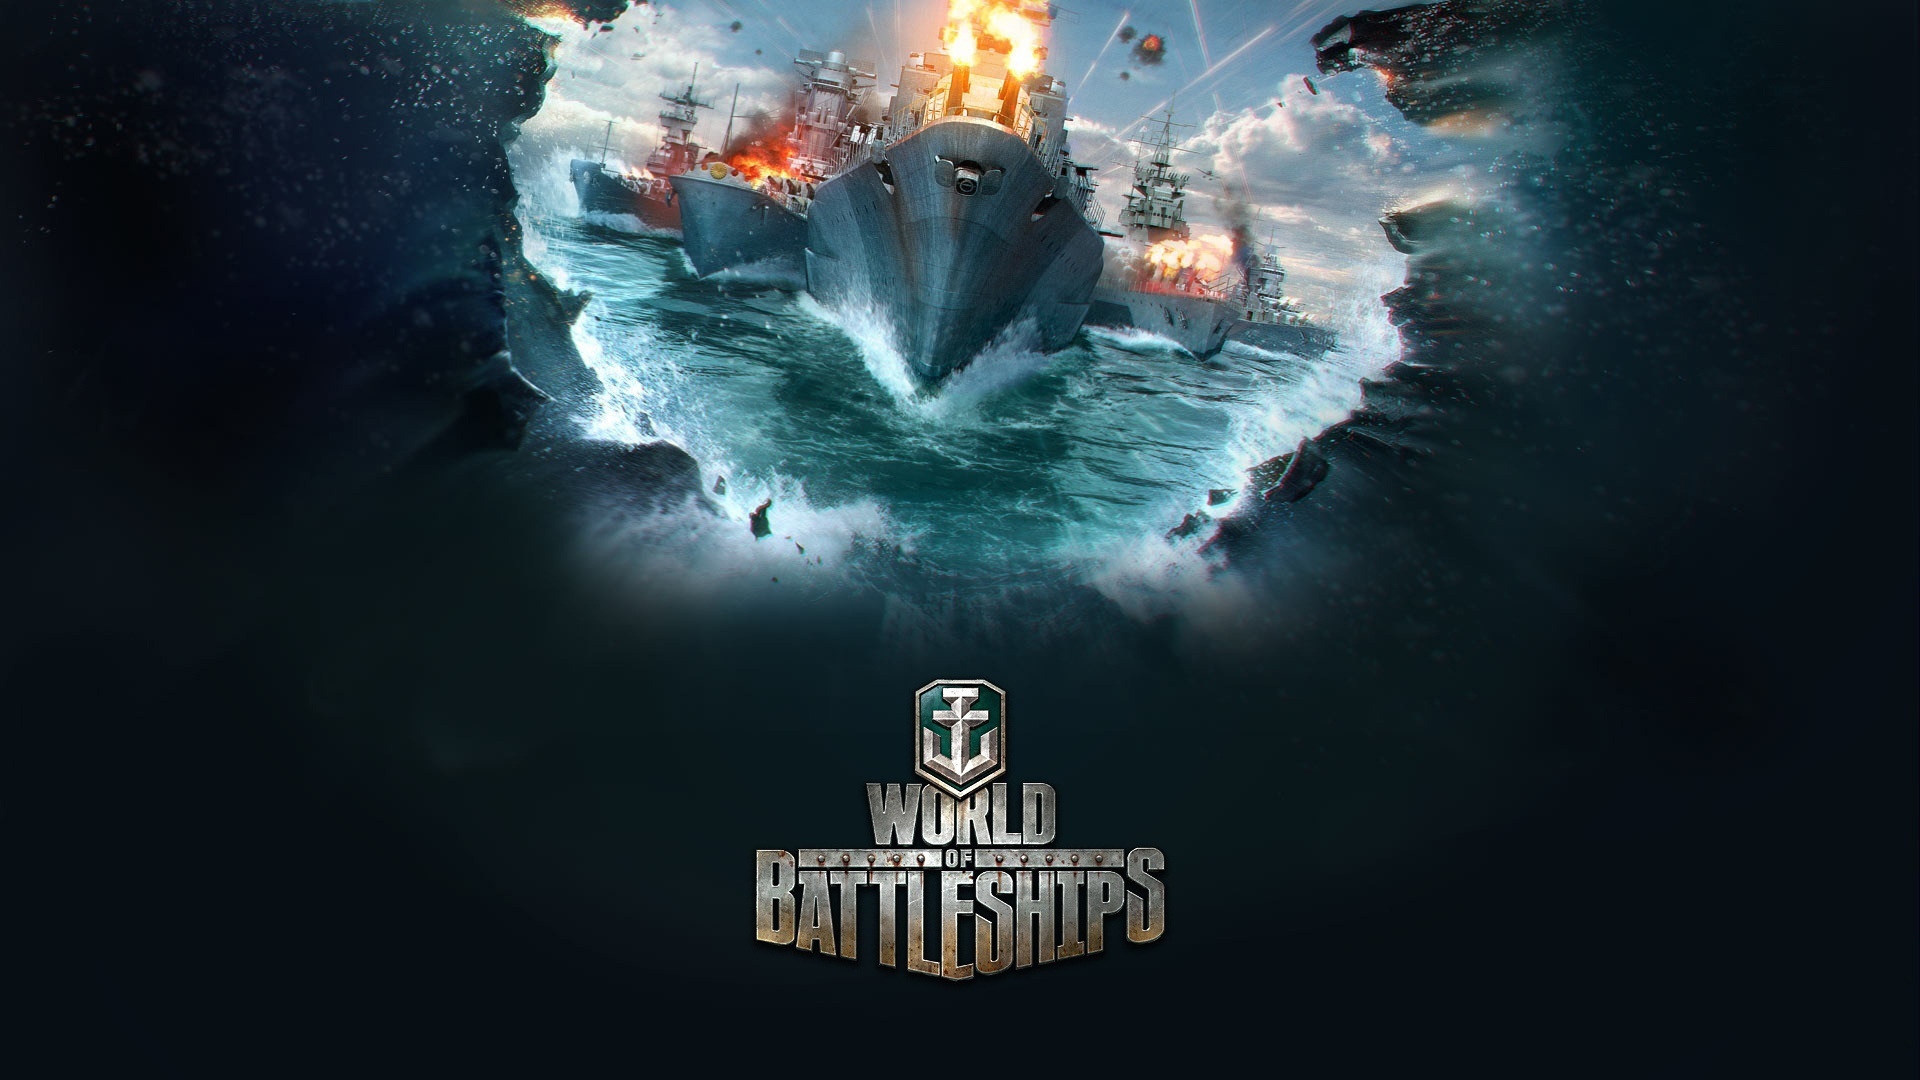 World of Battleships for 1920 x 1080 HDTV 1080p resolution